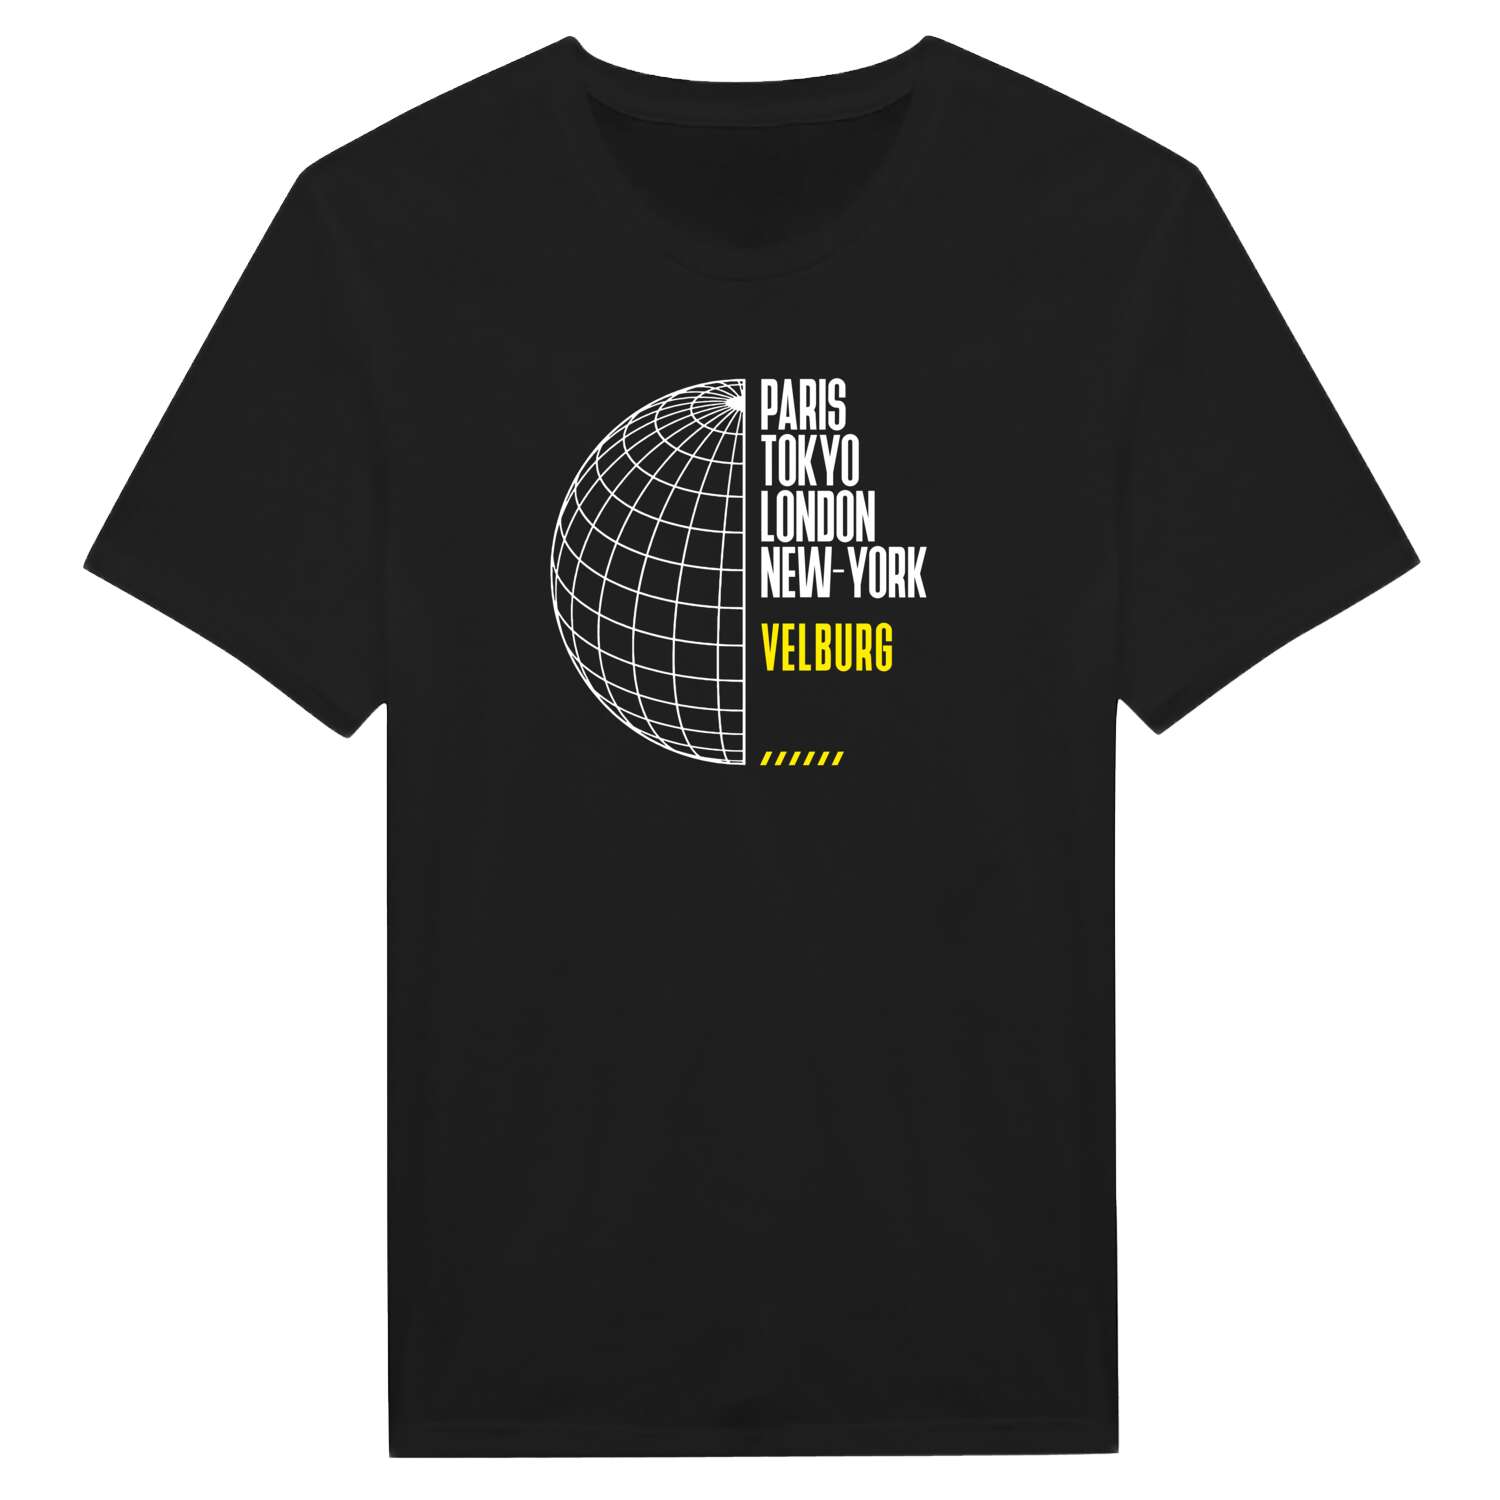 Velburg T-Shirt »Paris Tokyo London«